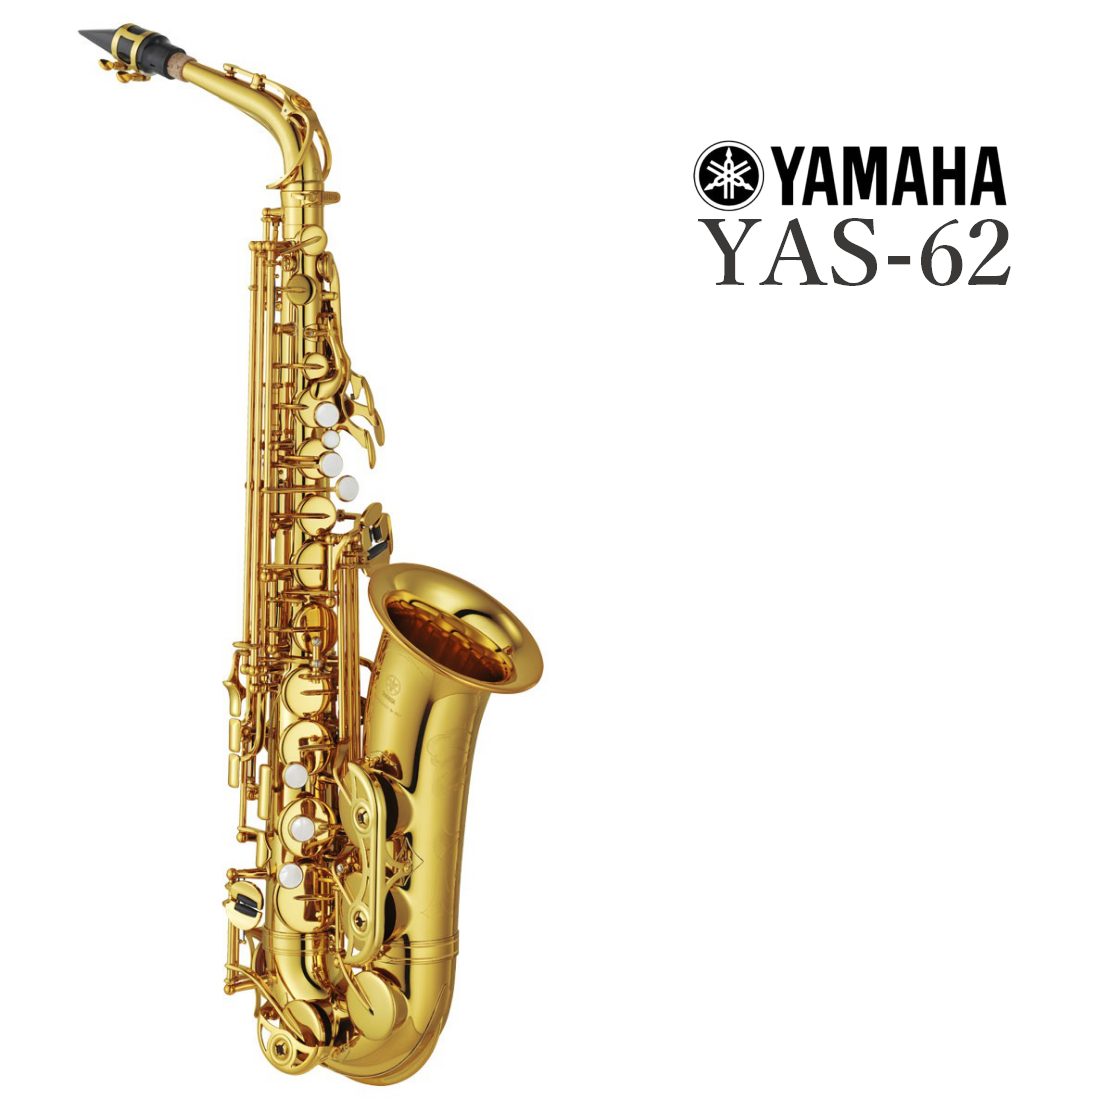 YAMAHAYAS-62